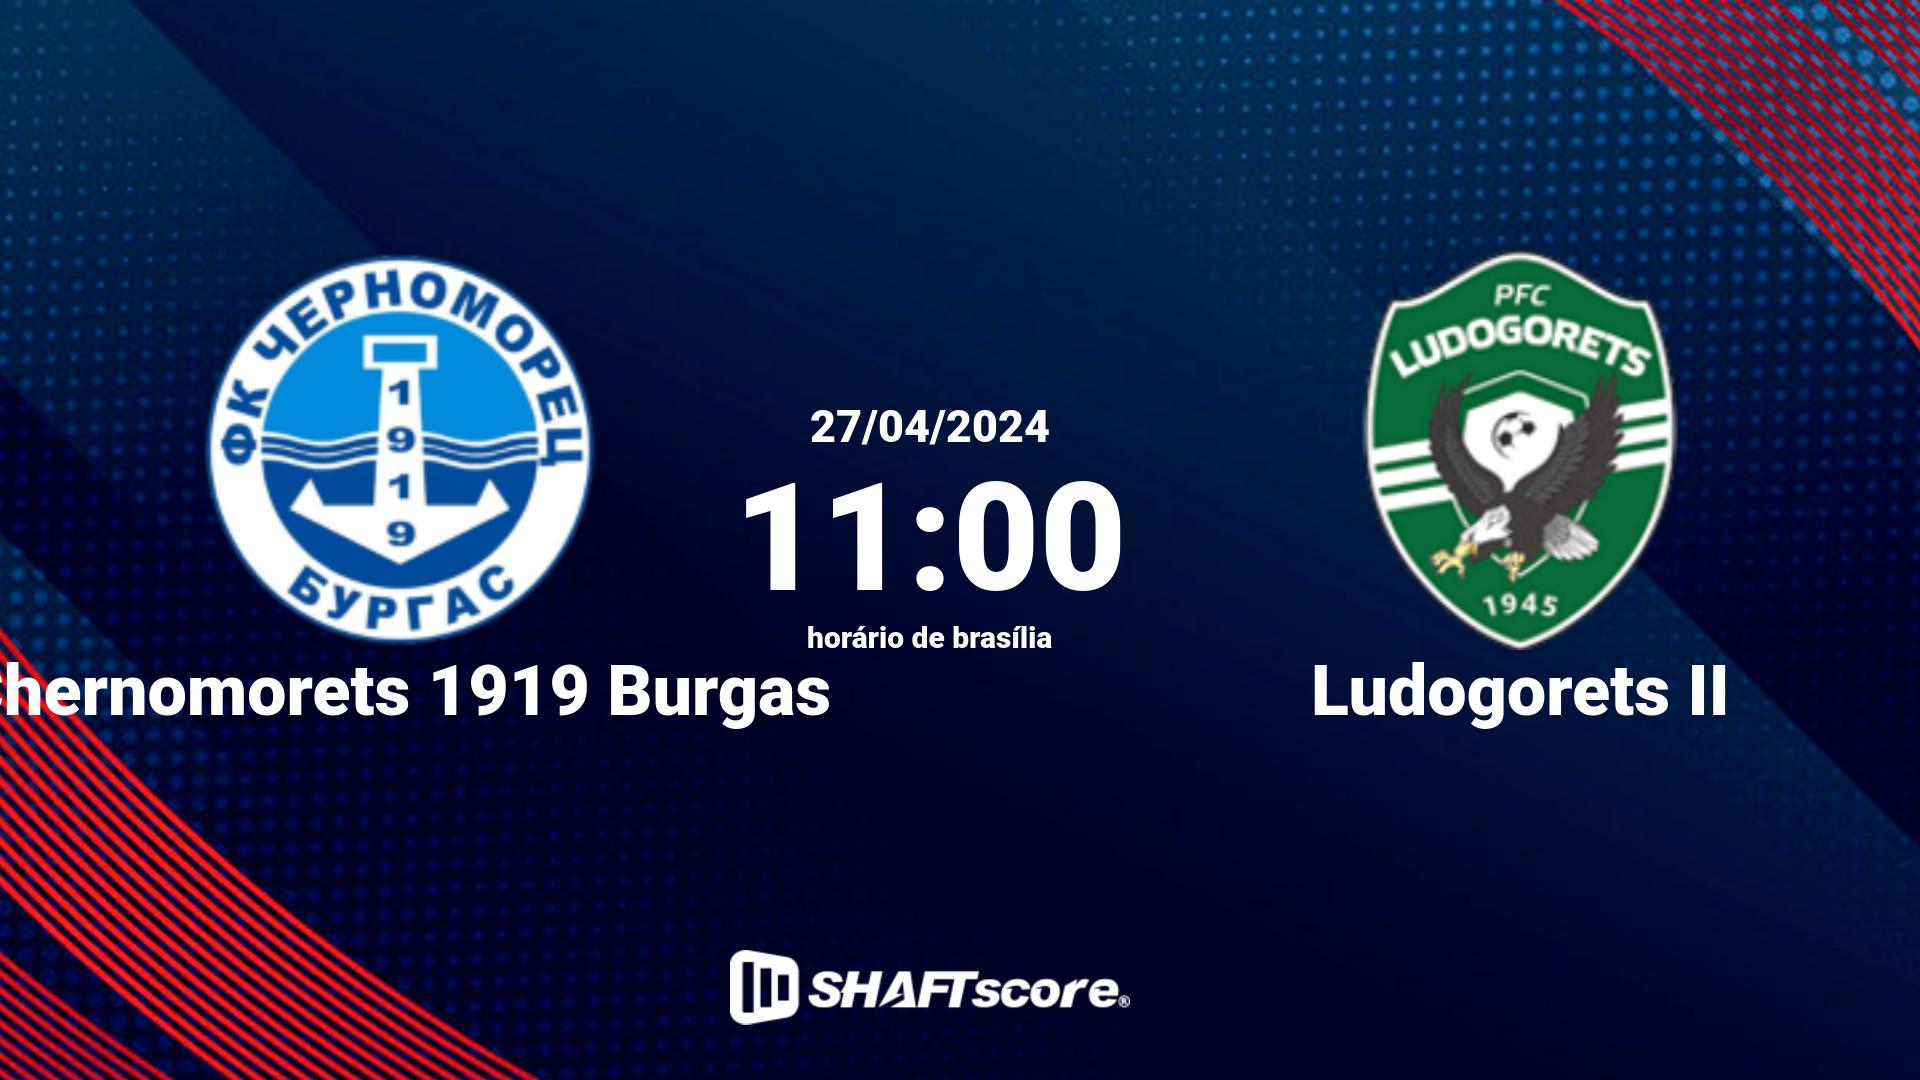 Estatísticas do jogo Chernomorets 1919 Burgas vs Ludogorets II 27.04 11:00